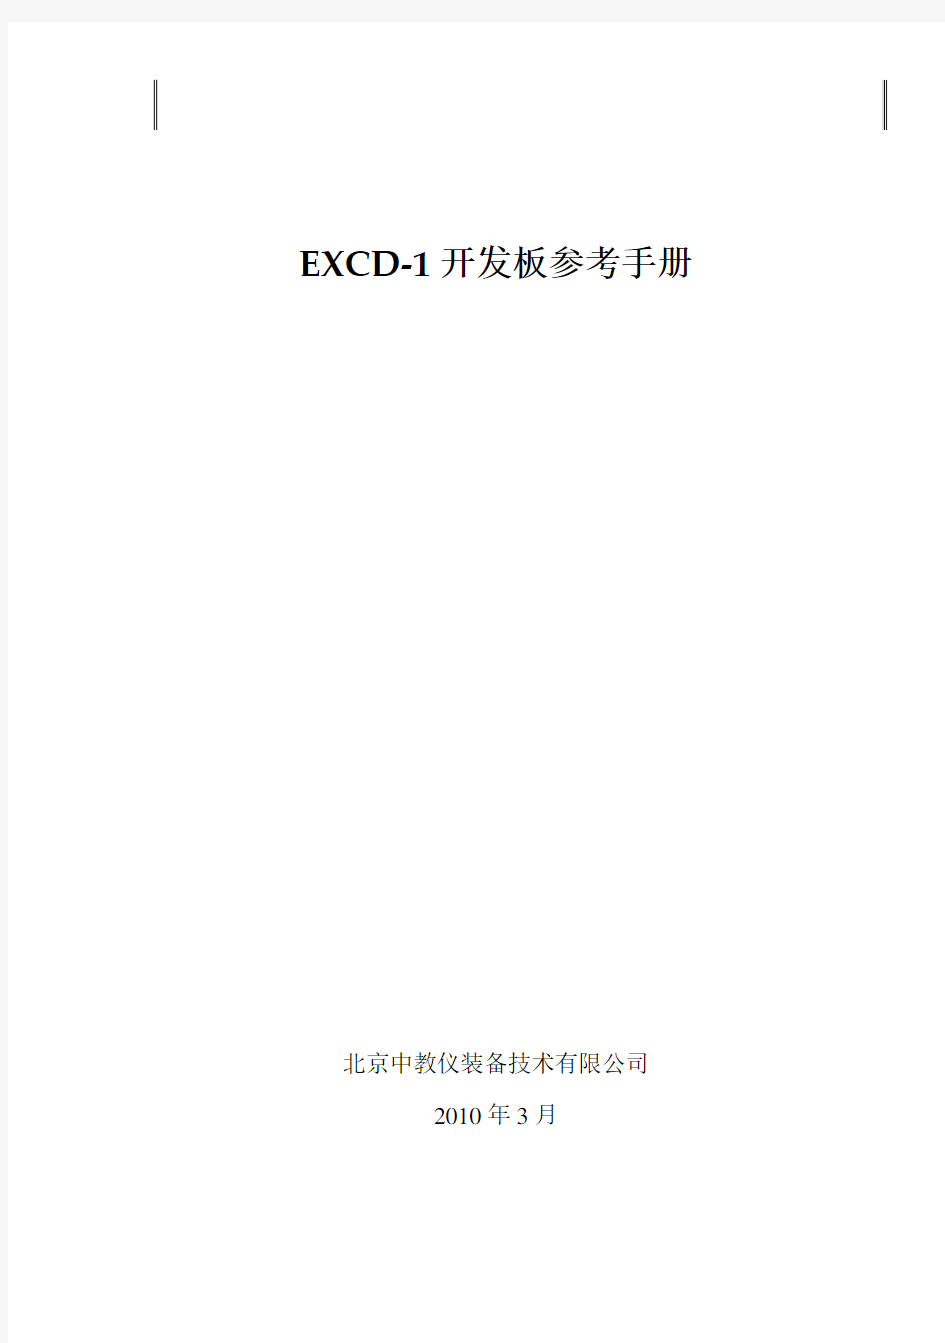 EXCD1开发板使用手册